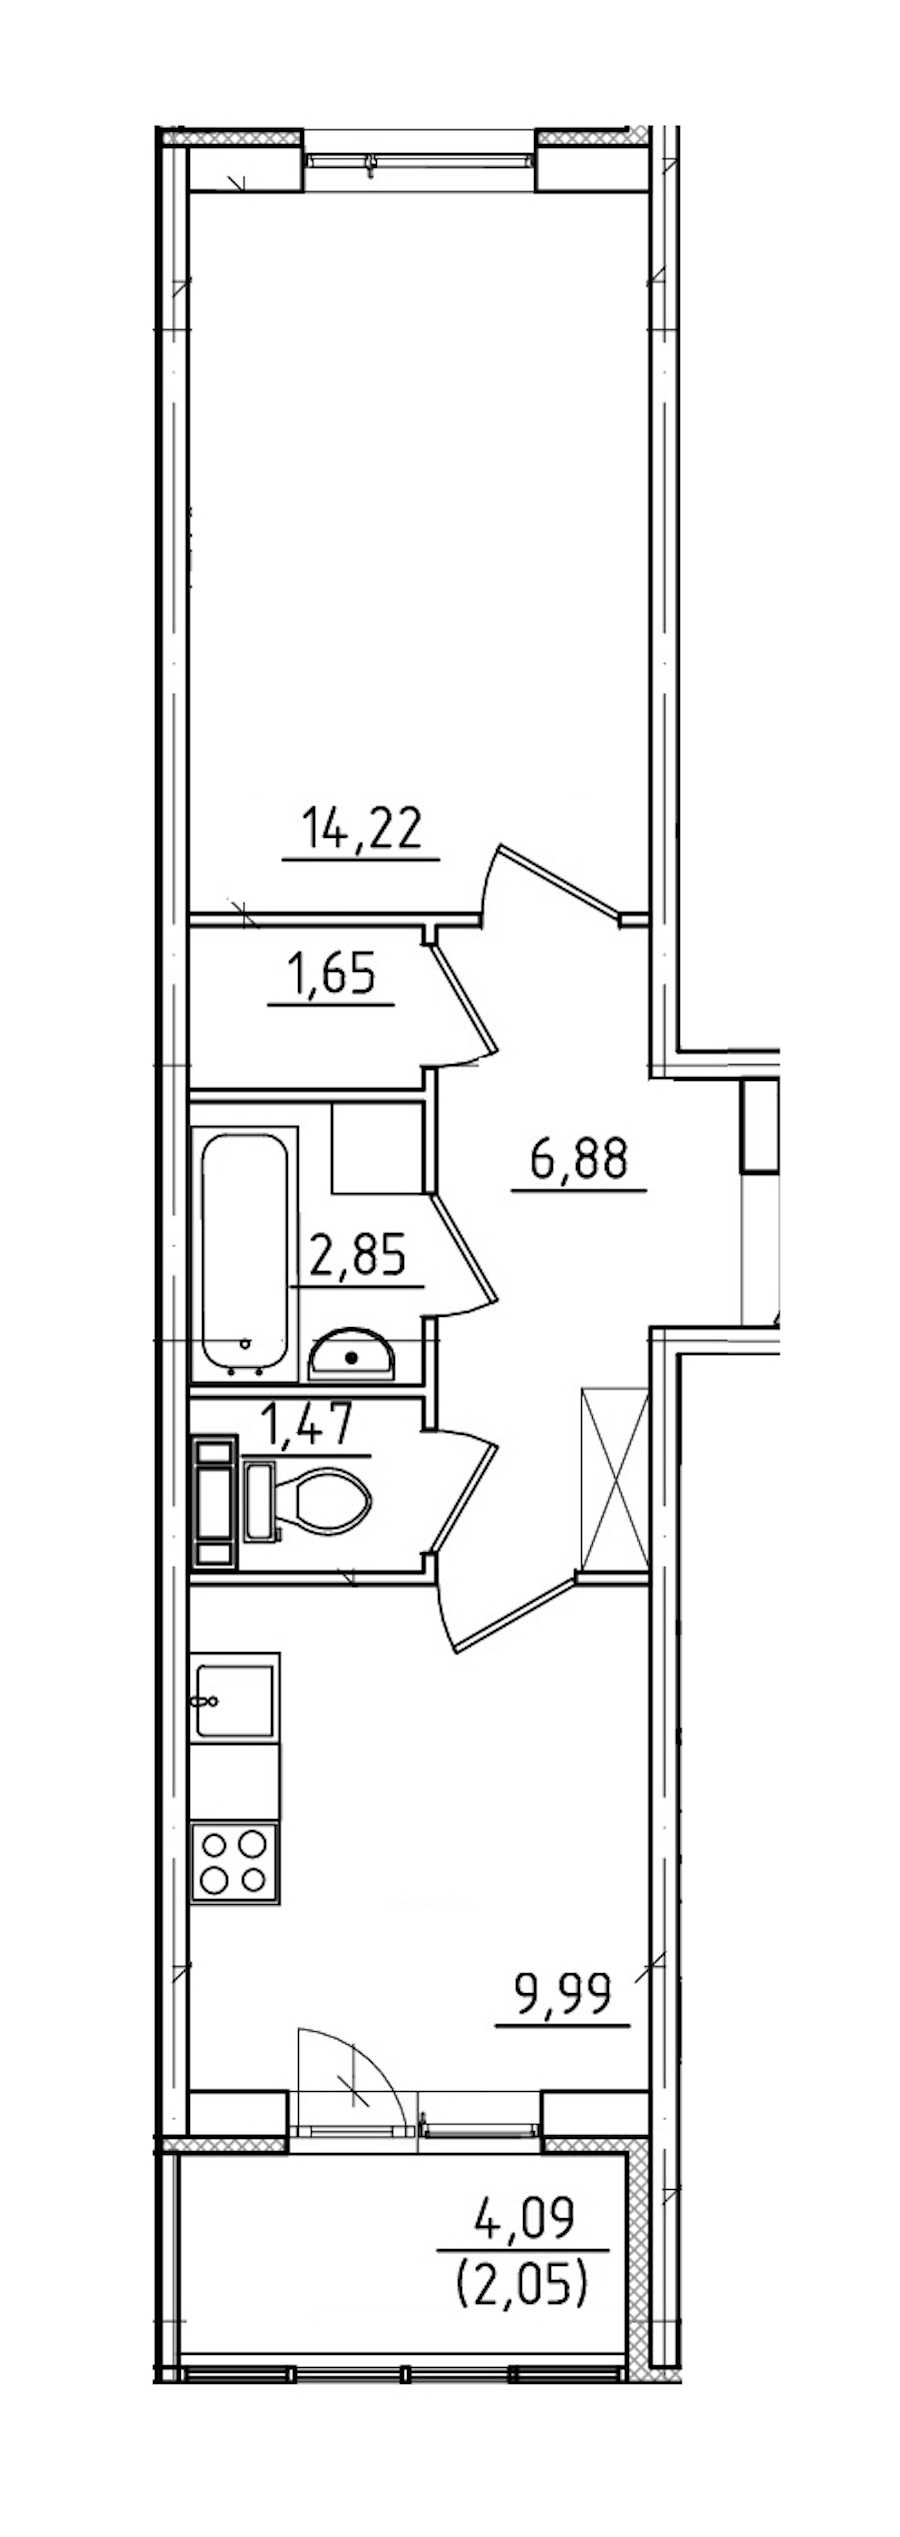 Однокомнатная квартира в ЛенСтройТрест: площадь 39.11 м2 , этаж: 4 – купить в Санкт-Петербурге